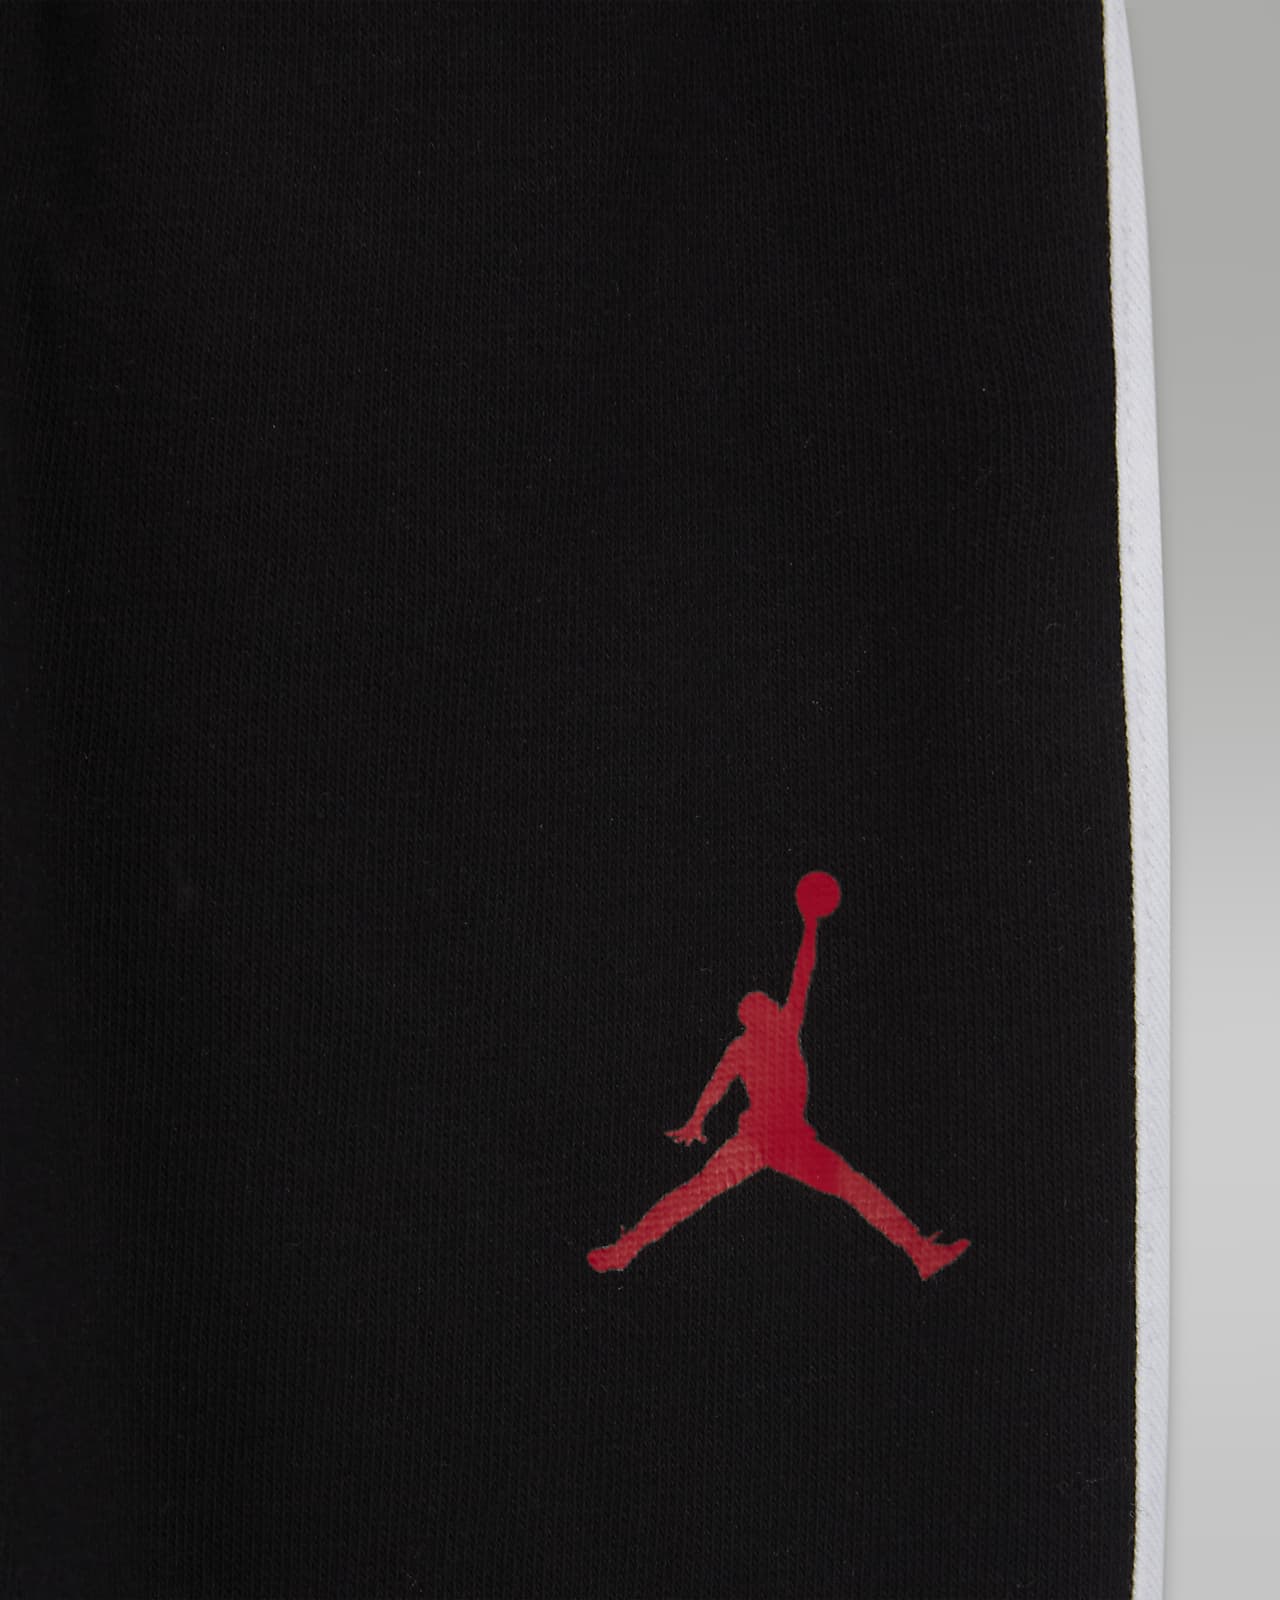 Jordan Jumpman Air Baby (12-24M) T-Shirt and Shorts Set.